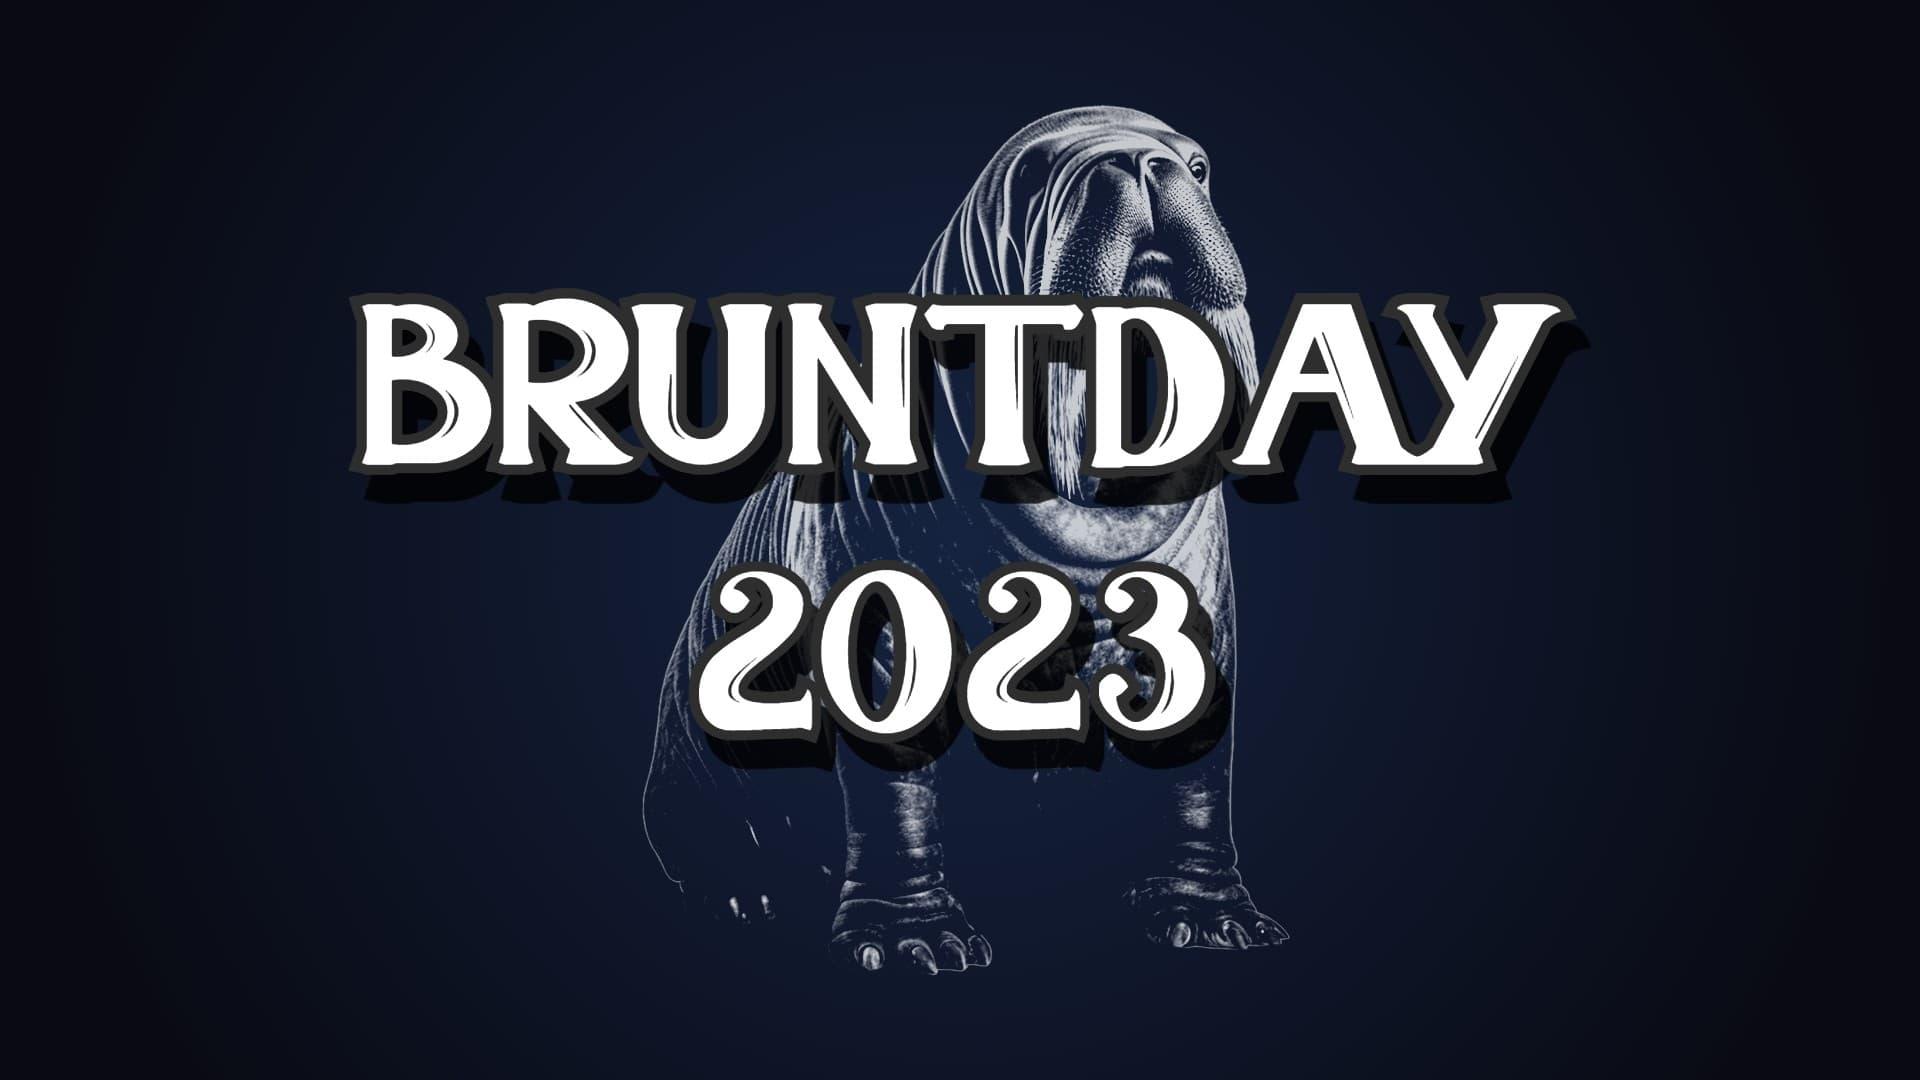 Bruntday 2023 backdrop